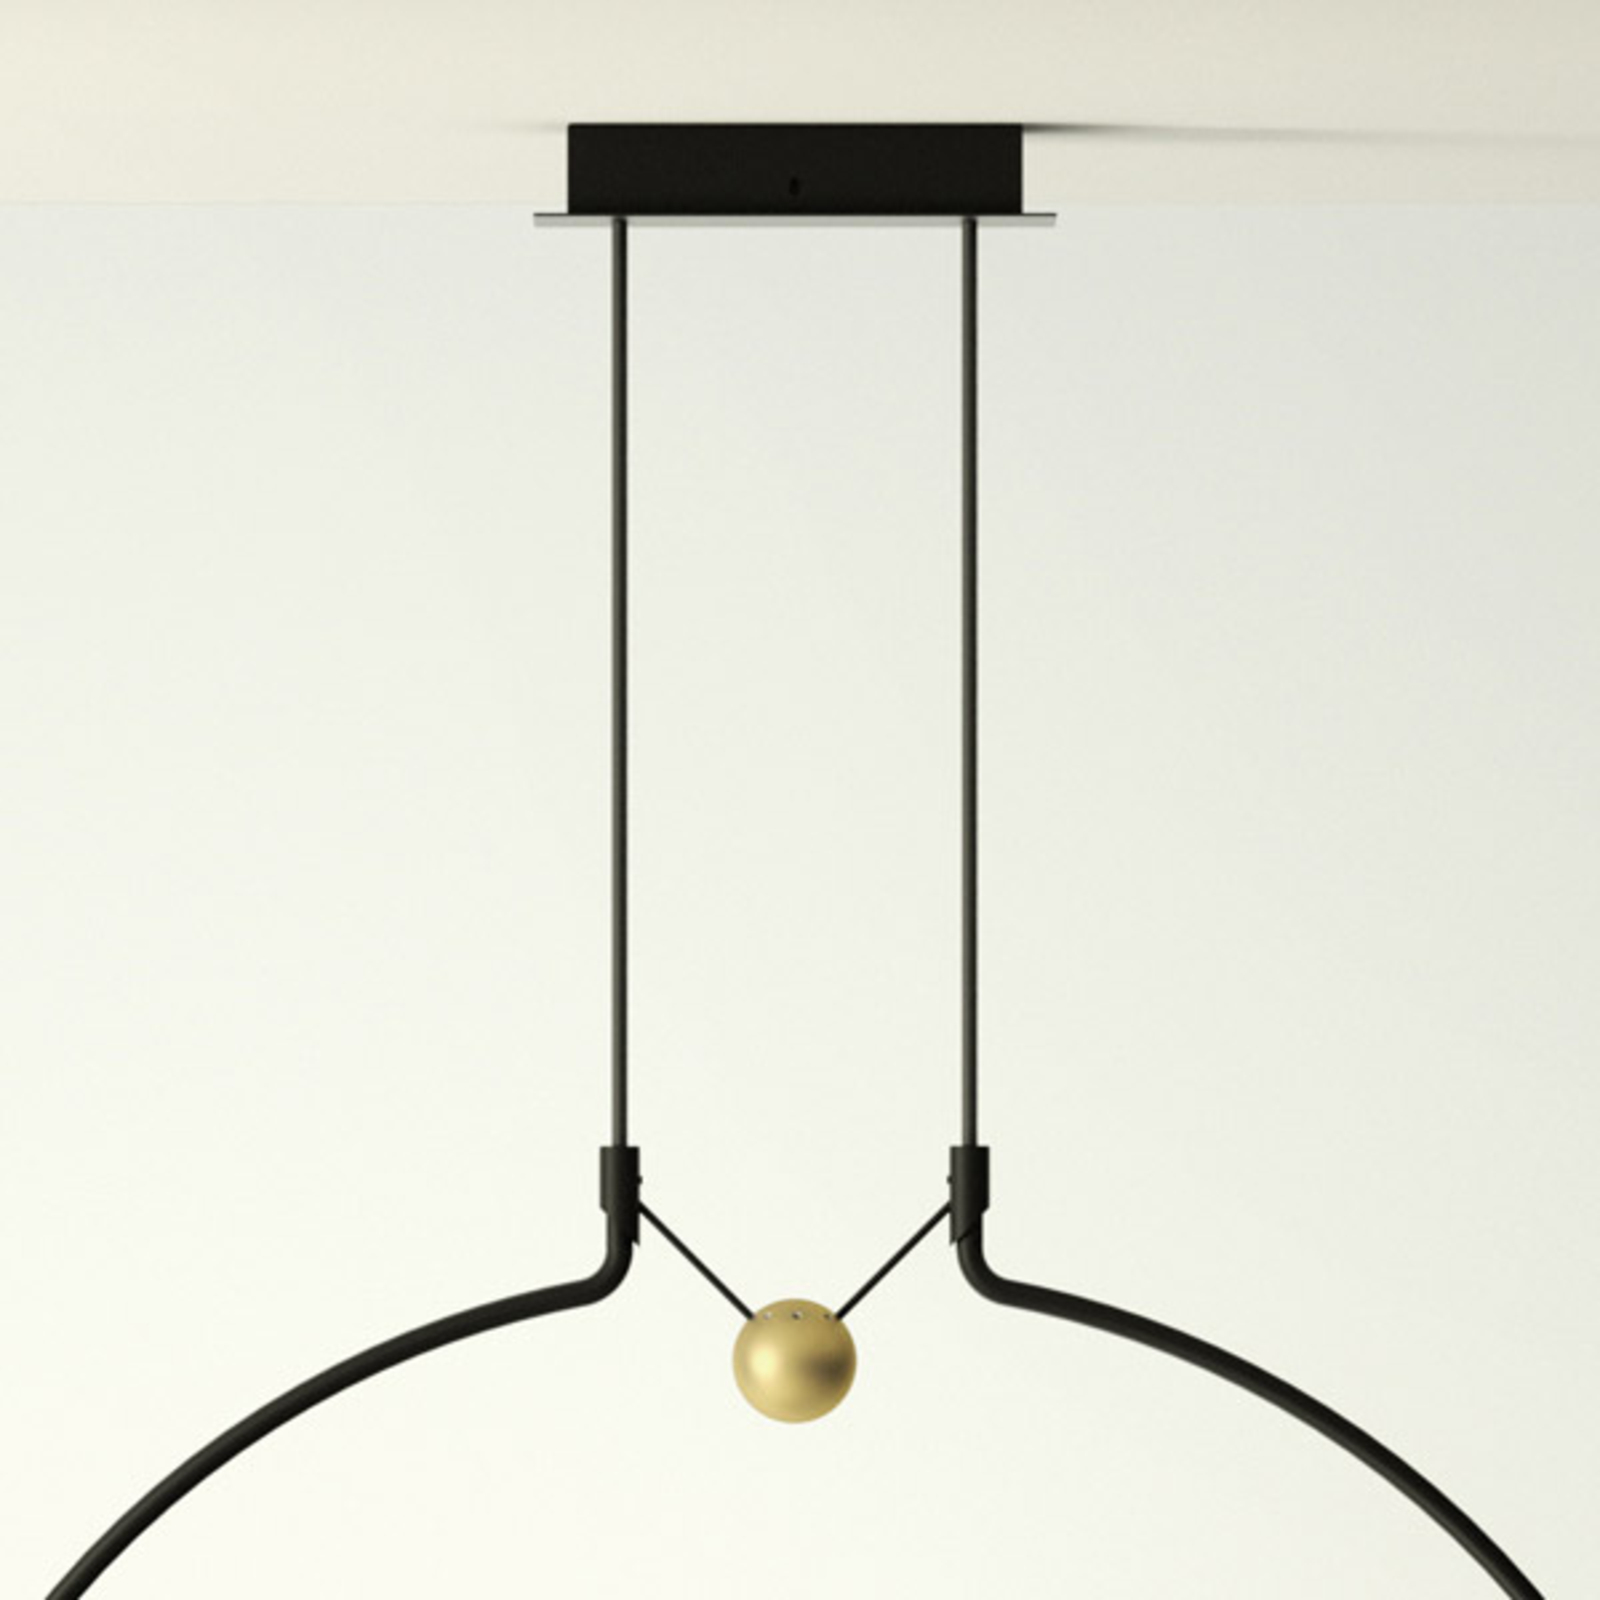 Axolight Liaison P2 hanglamp zwart/goud 56cm